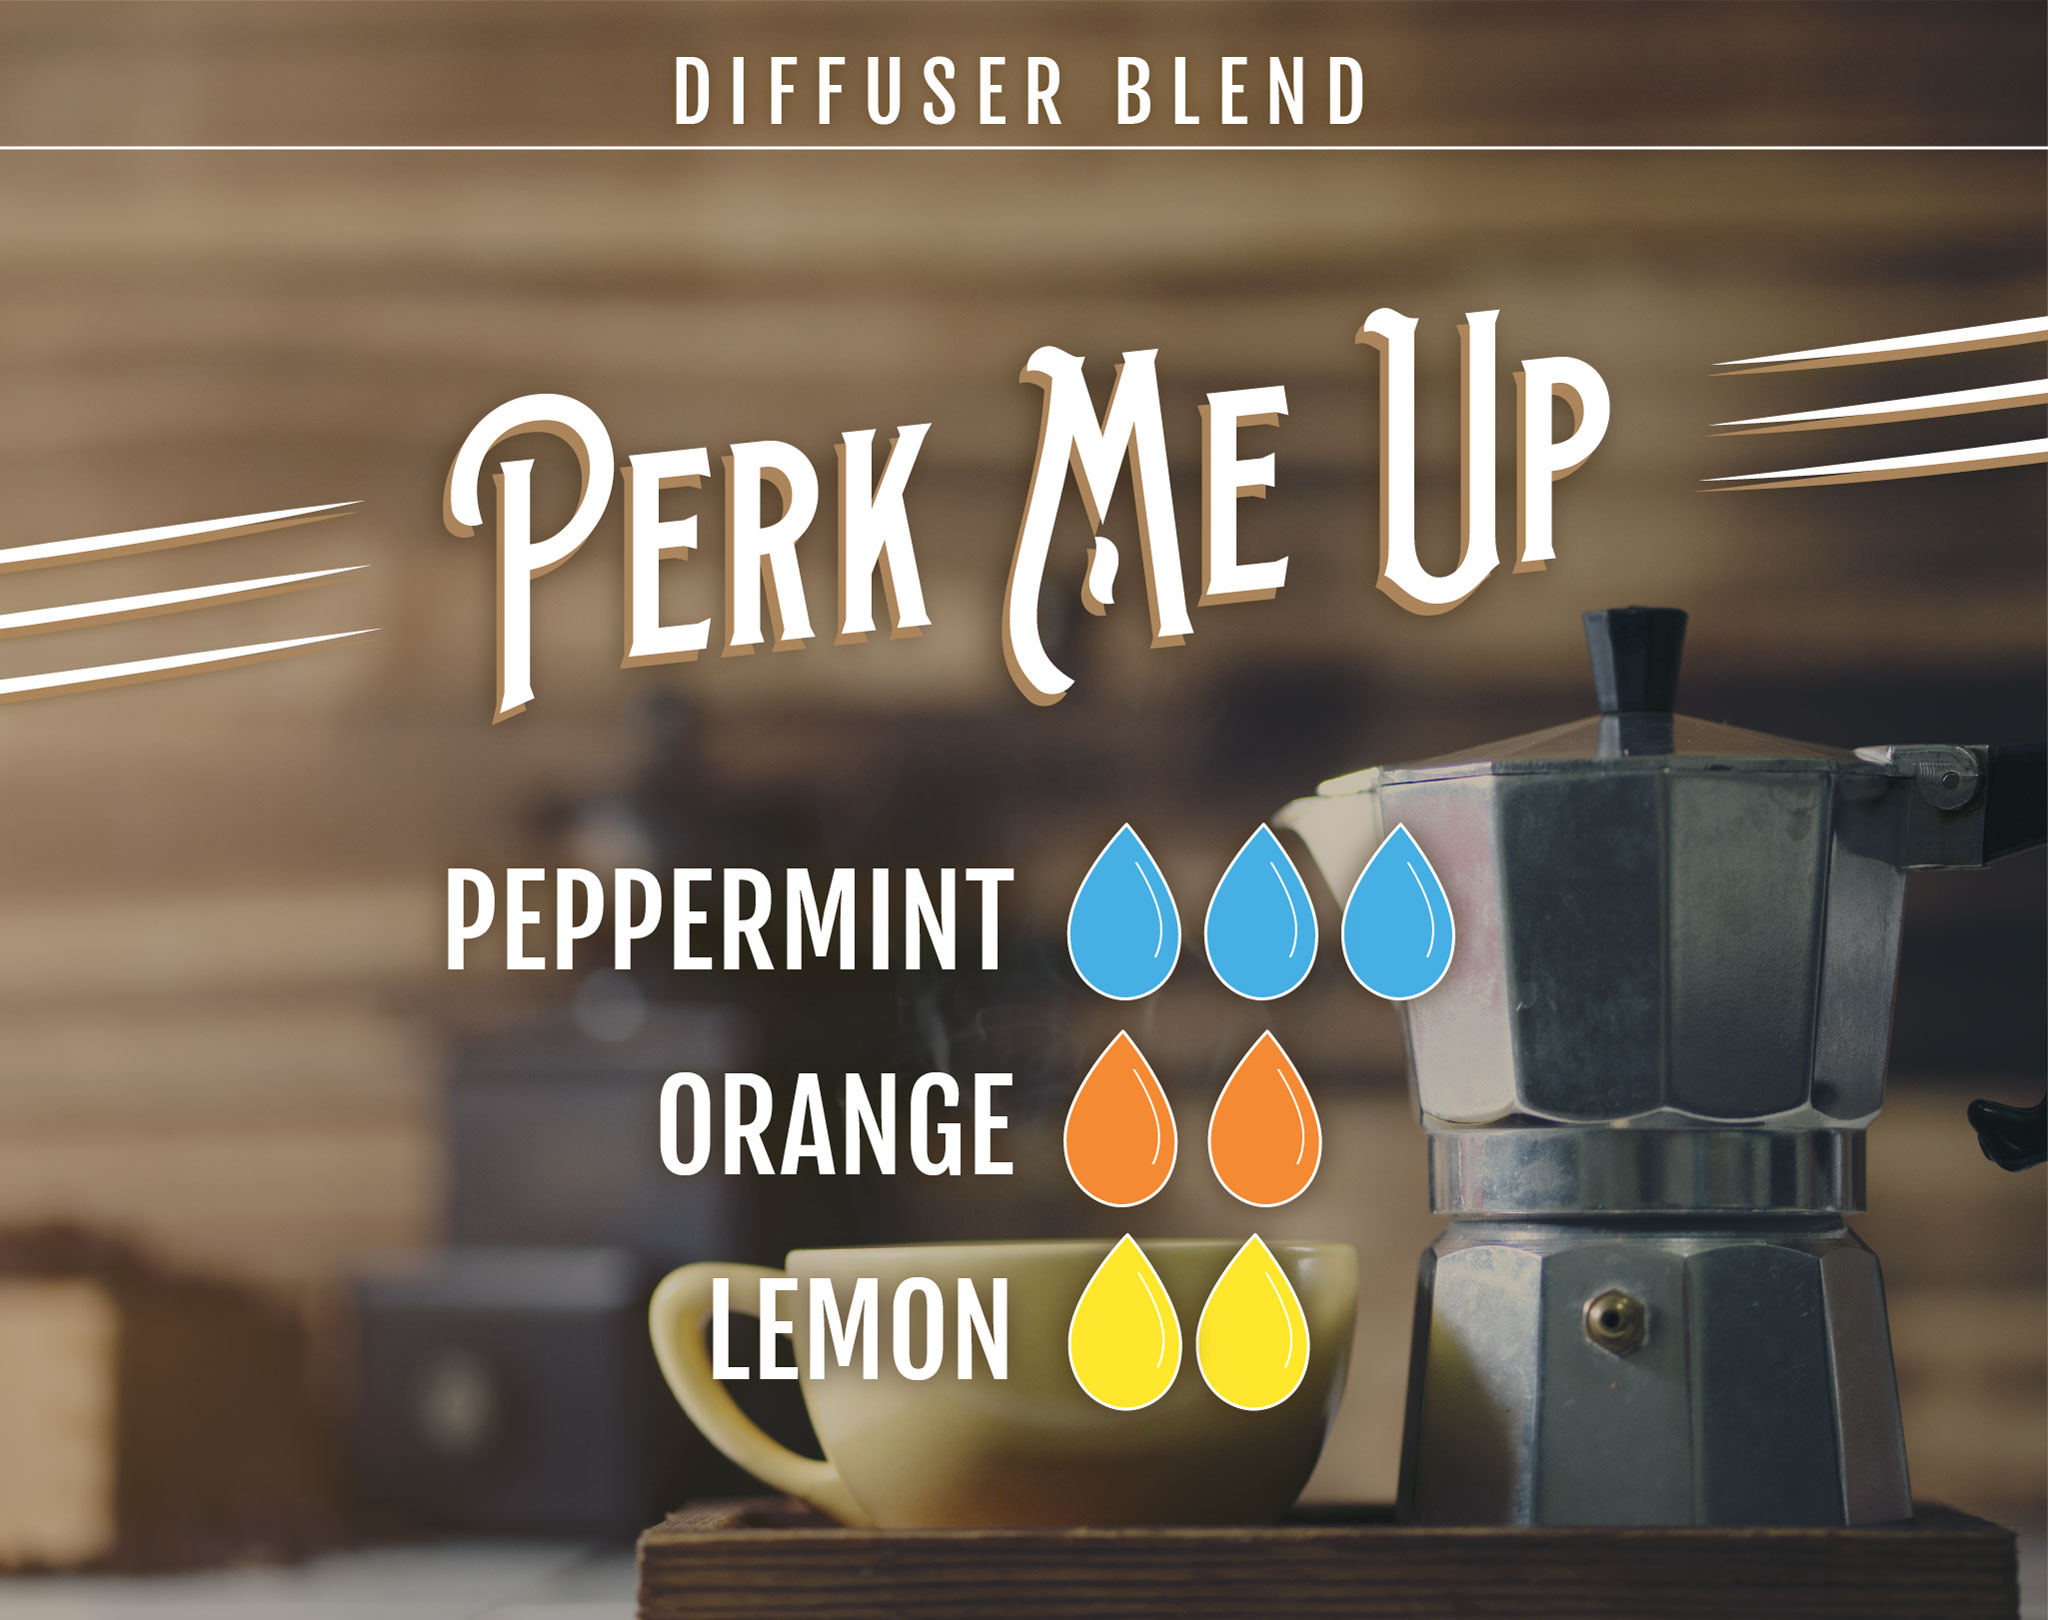 Perk Me Up Essential Oil (EO) Diffuser Blend: 3 drops Peppermint EO, 2 drops Orange EO, 2 drops Lemon EO